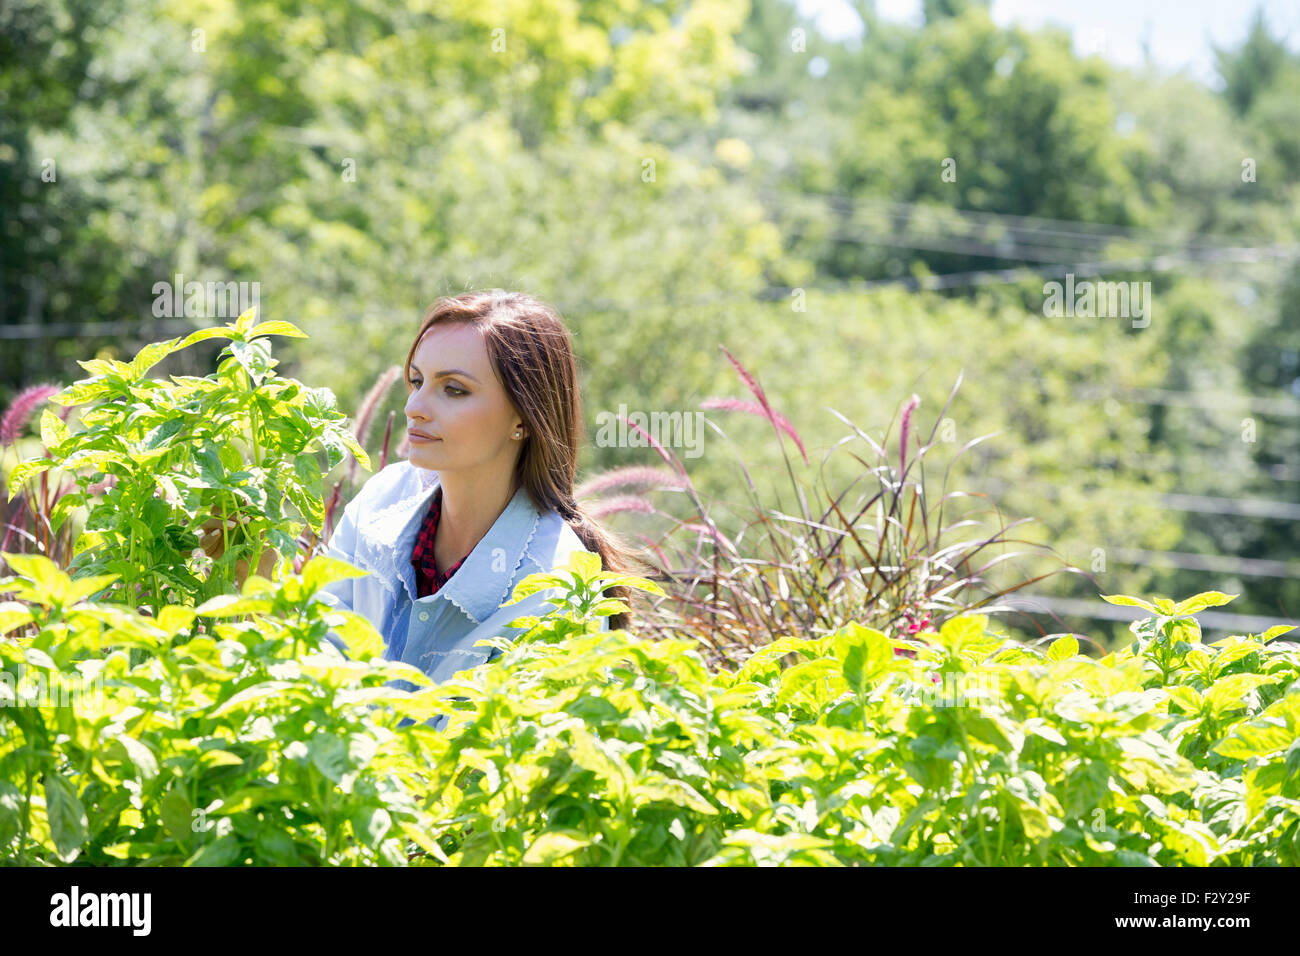 Eine junge Frau in einem Garten, umgeben von Sträuchern wachsen. Stockfoto